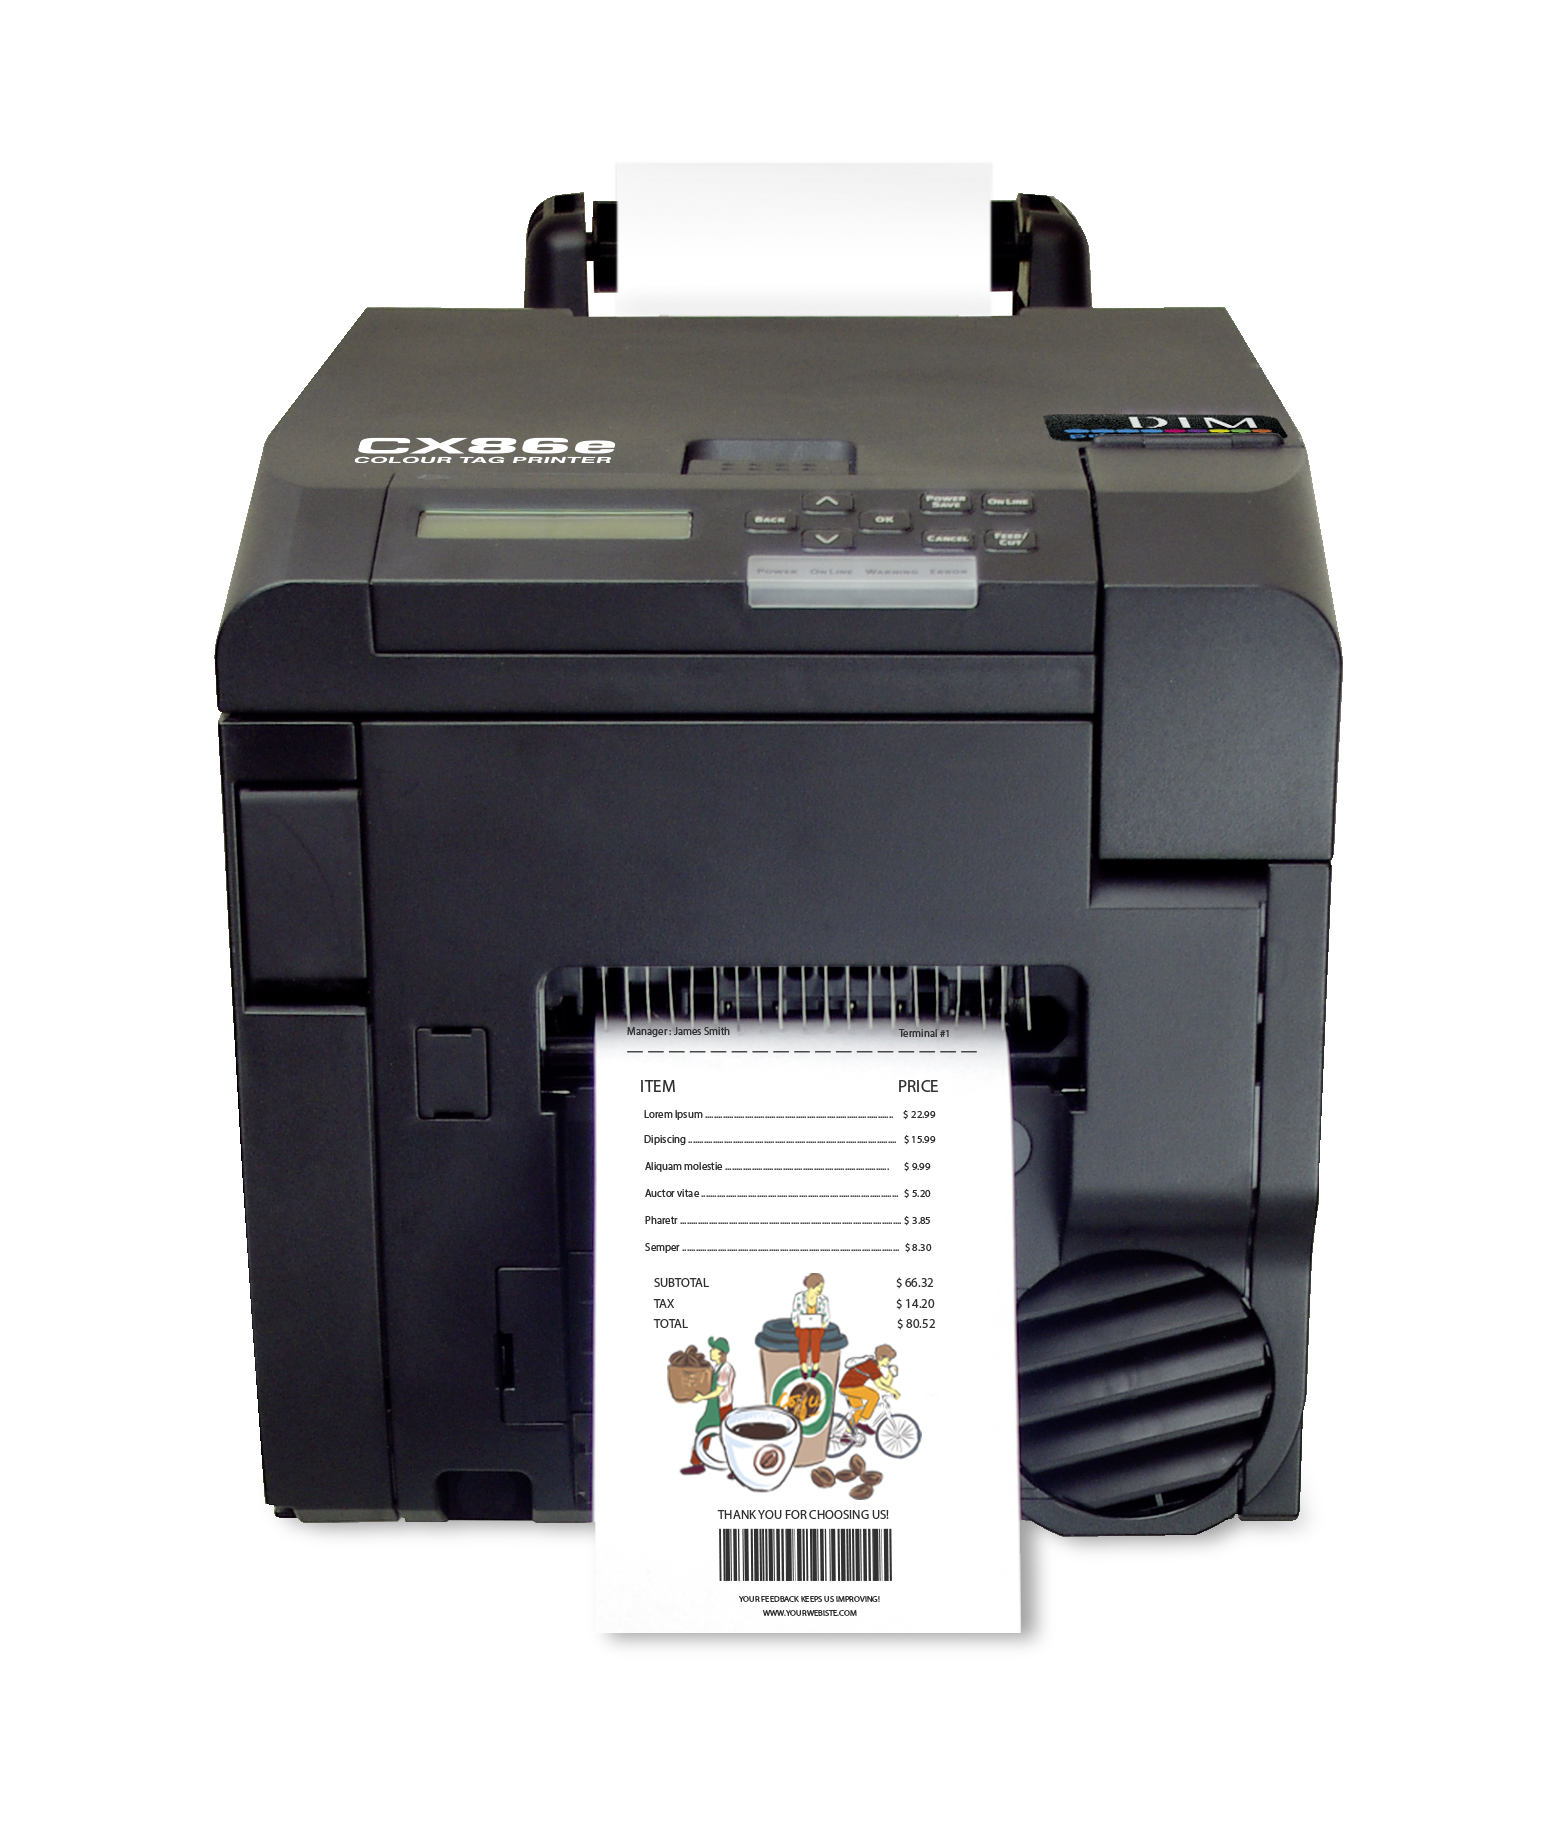 รูปภาพของ DTM CX86e ColourTag Printer
